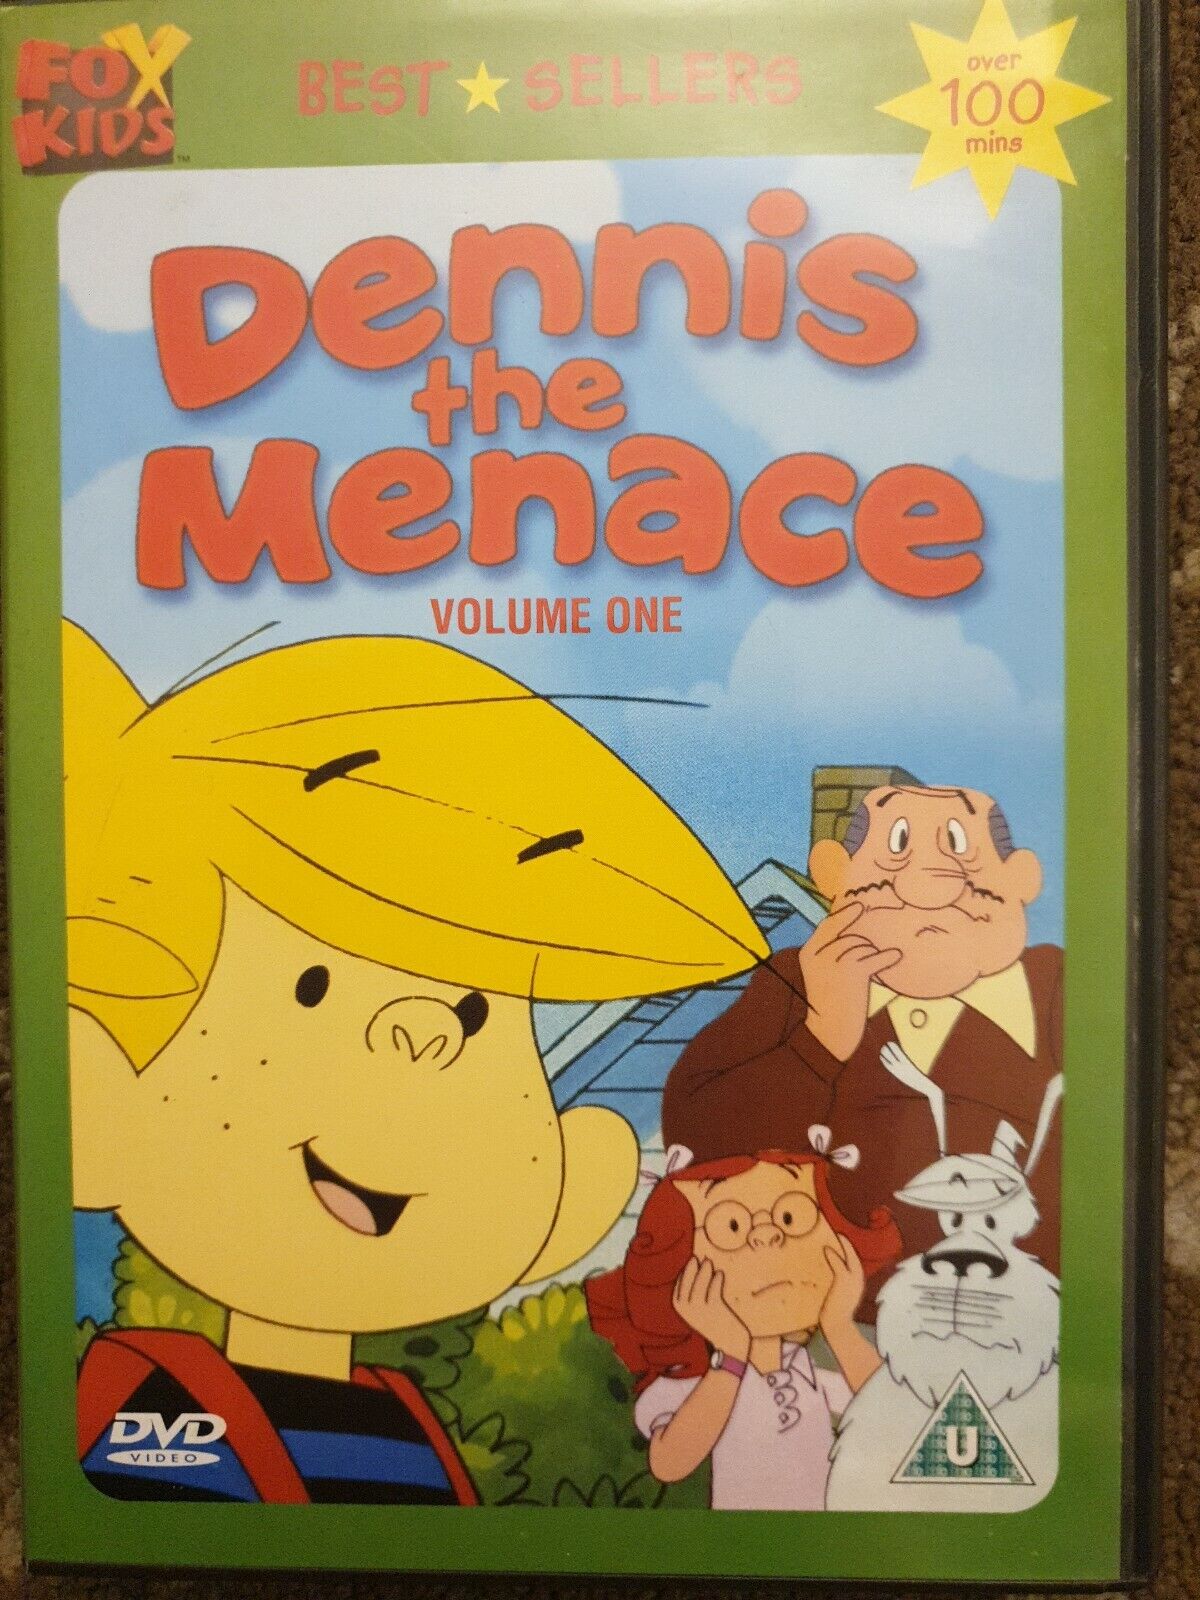 DENNIS THE MENACE VOLUME 1 DVD FOX KIDS CARTOON 5 EPISODES | eBay